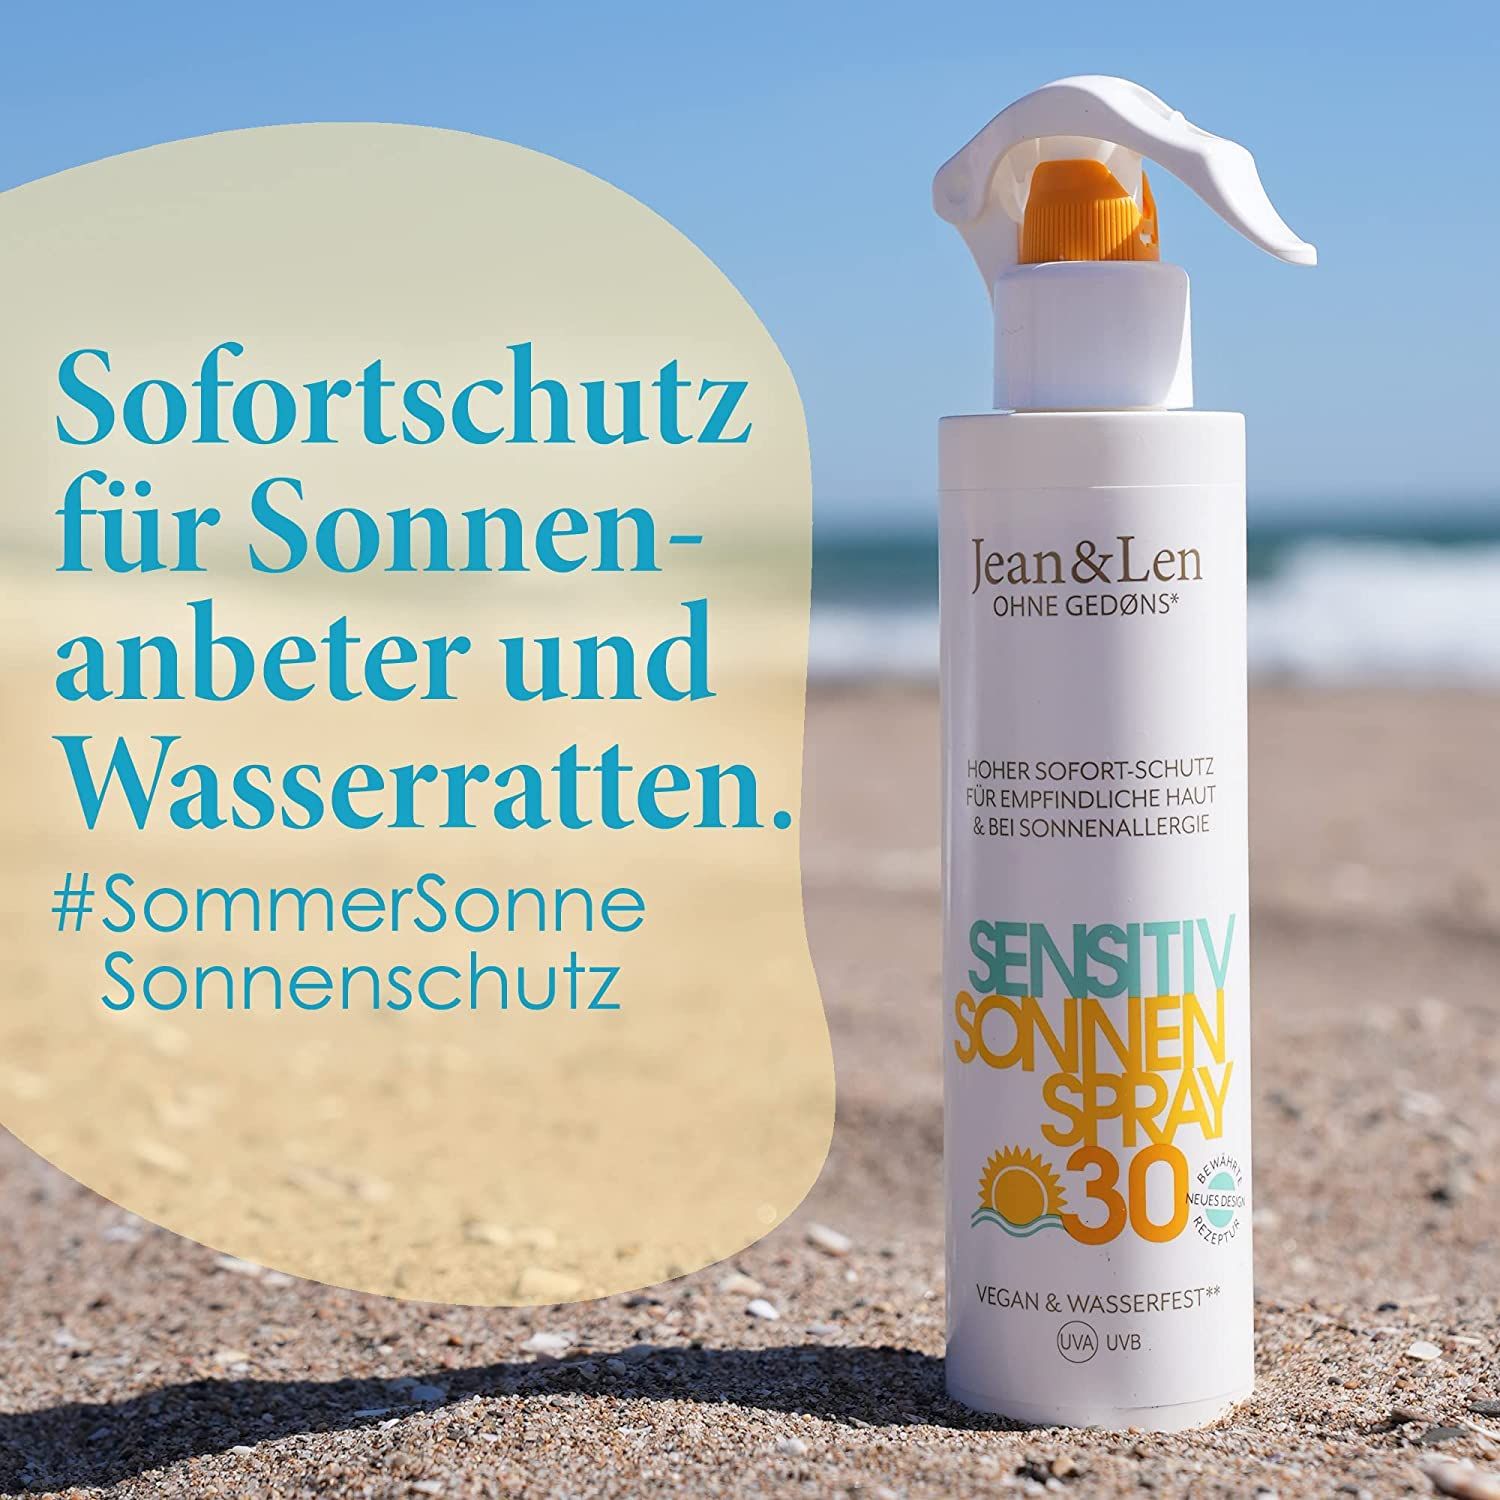 Jean & Len Sensitiv Sonnenspray 30LSF wasserfest, für empfindliche & zu Sonnenallergie neigende Haut